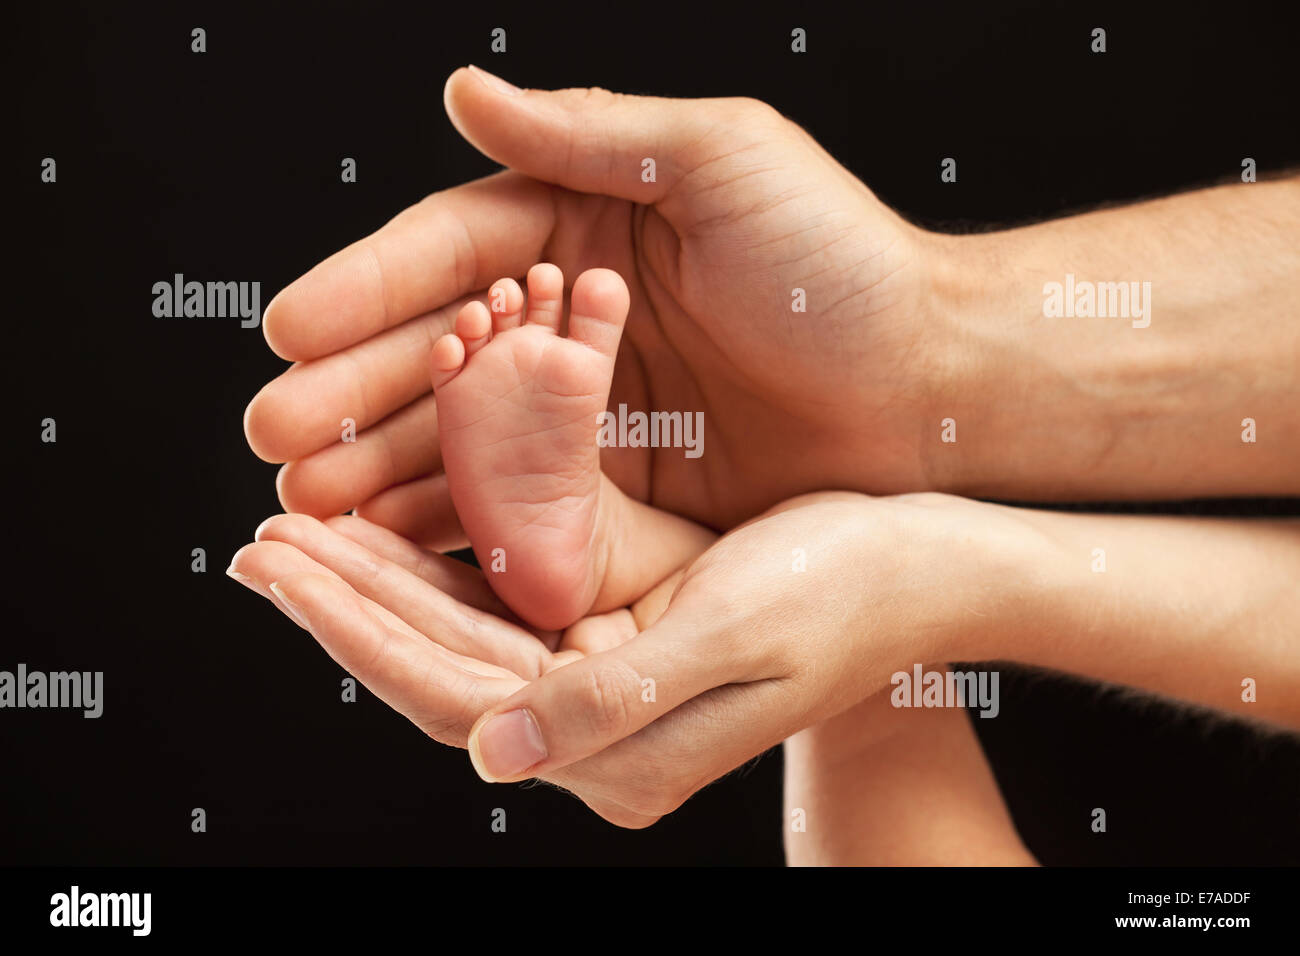 tiny baby tiny hand